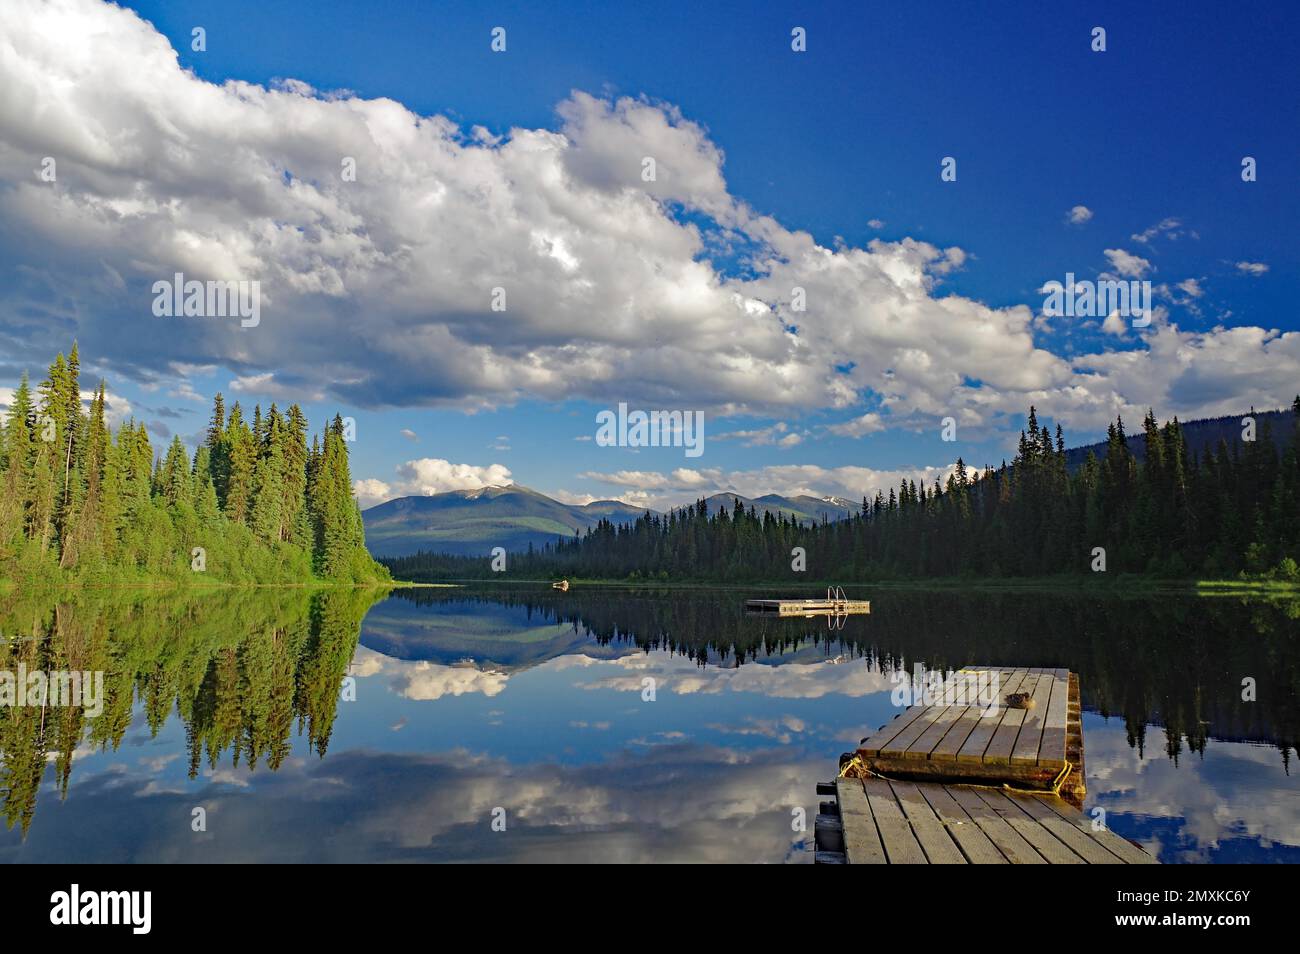 Alberi e nuvole riflessi nell'acqua liscia di un lago, idile, Canada tipico, Principe George, British Columbia, Canada, Nord America Foto Stock